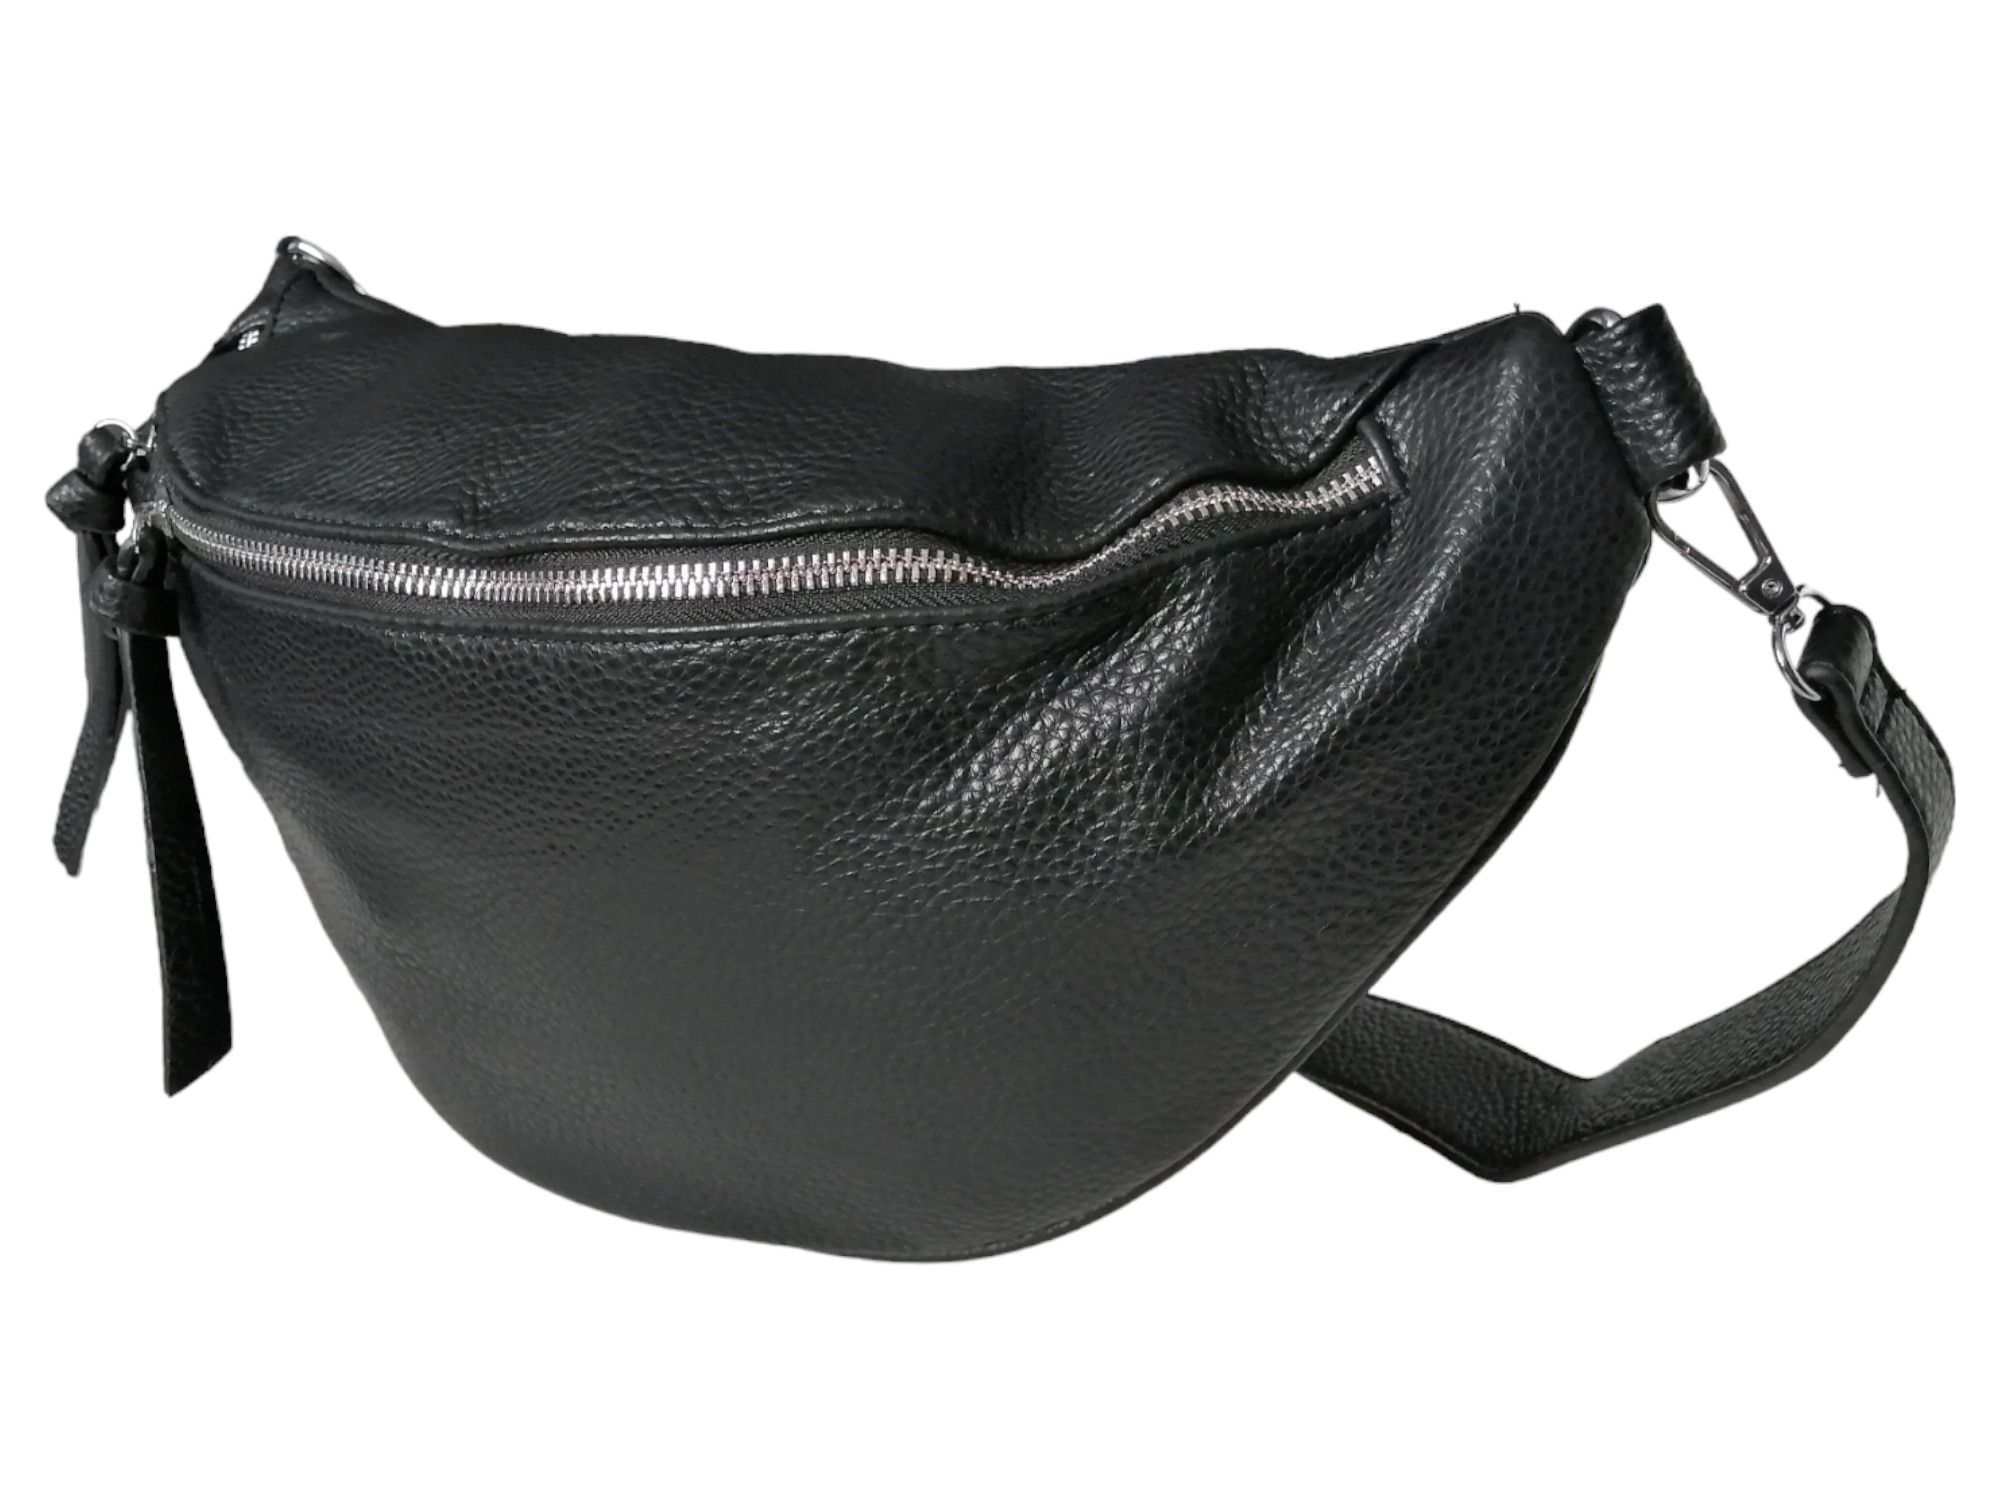 Duża torebka saszetka, nerka damska, czarna torba na ramię (2 paski)